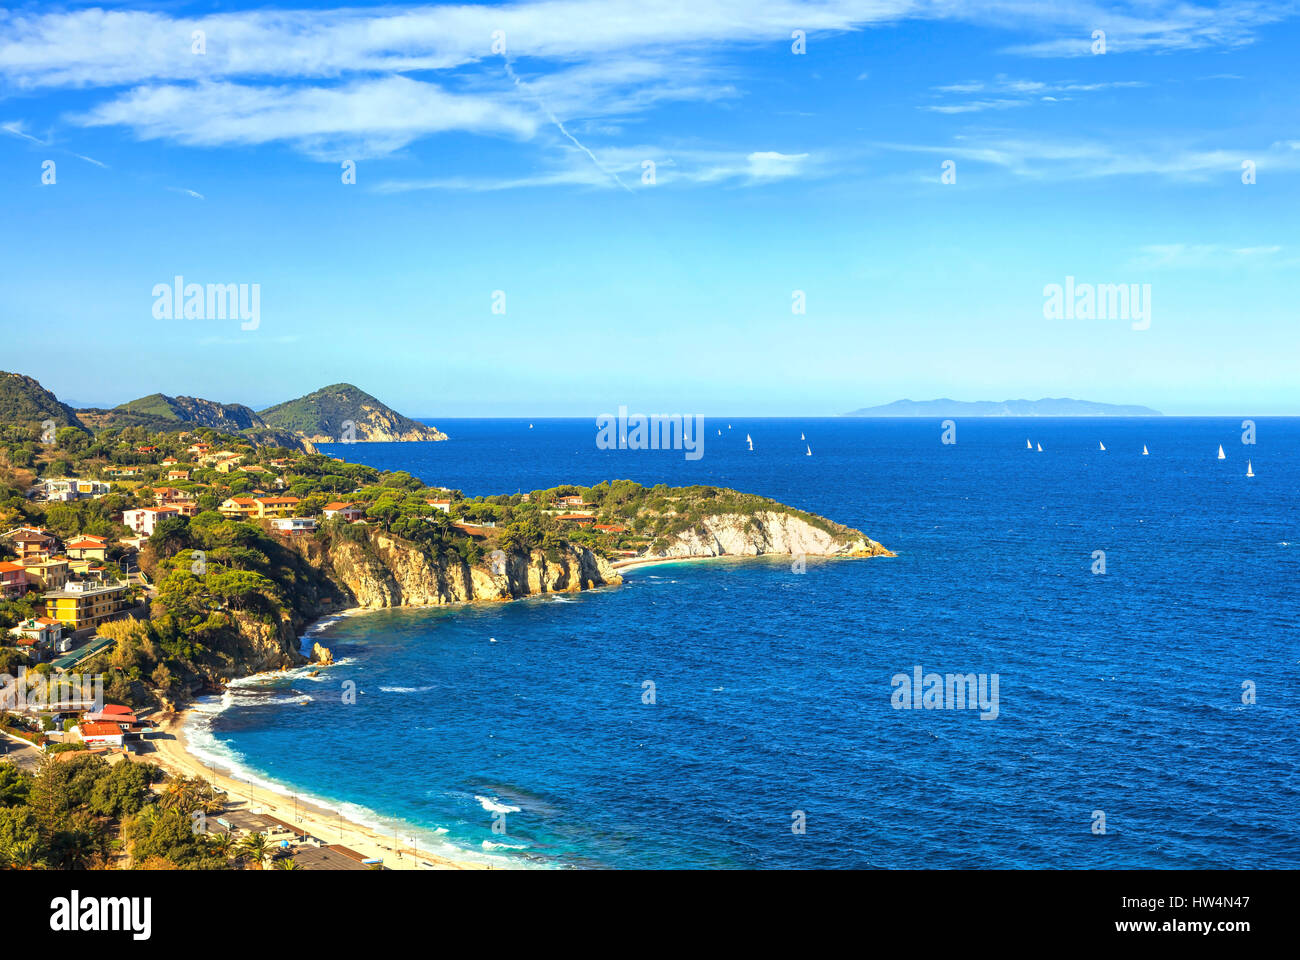 Isola d'Elba, Portoferraio Sansone spiaggia bianca della costa. Toscana, Italia, Europa. Lunga esposizione. Foto Stock